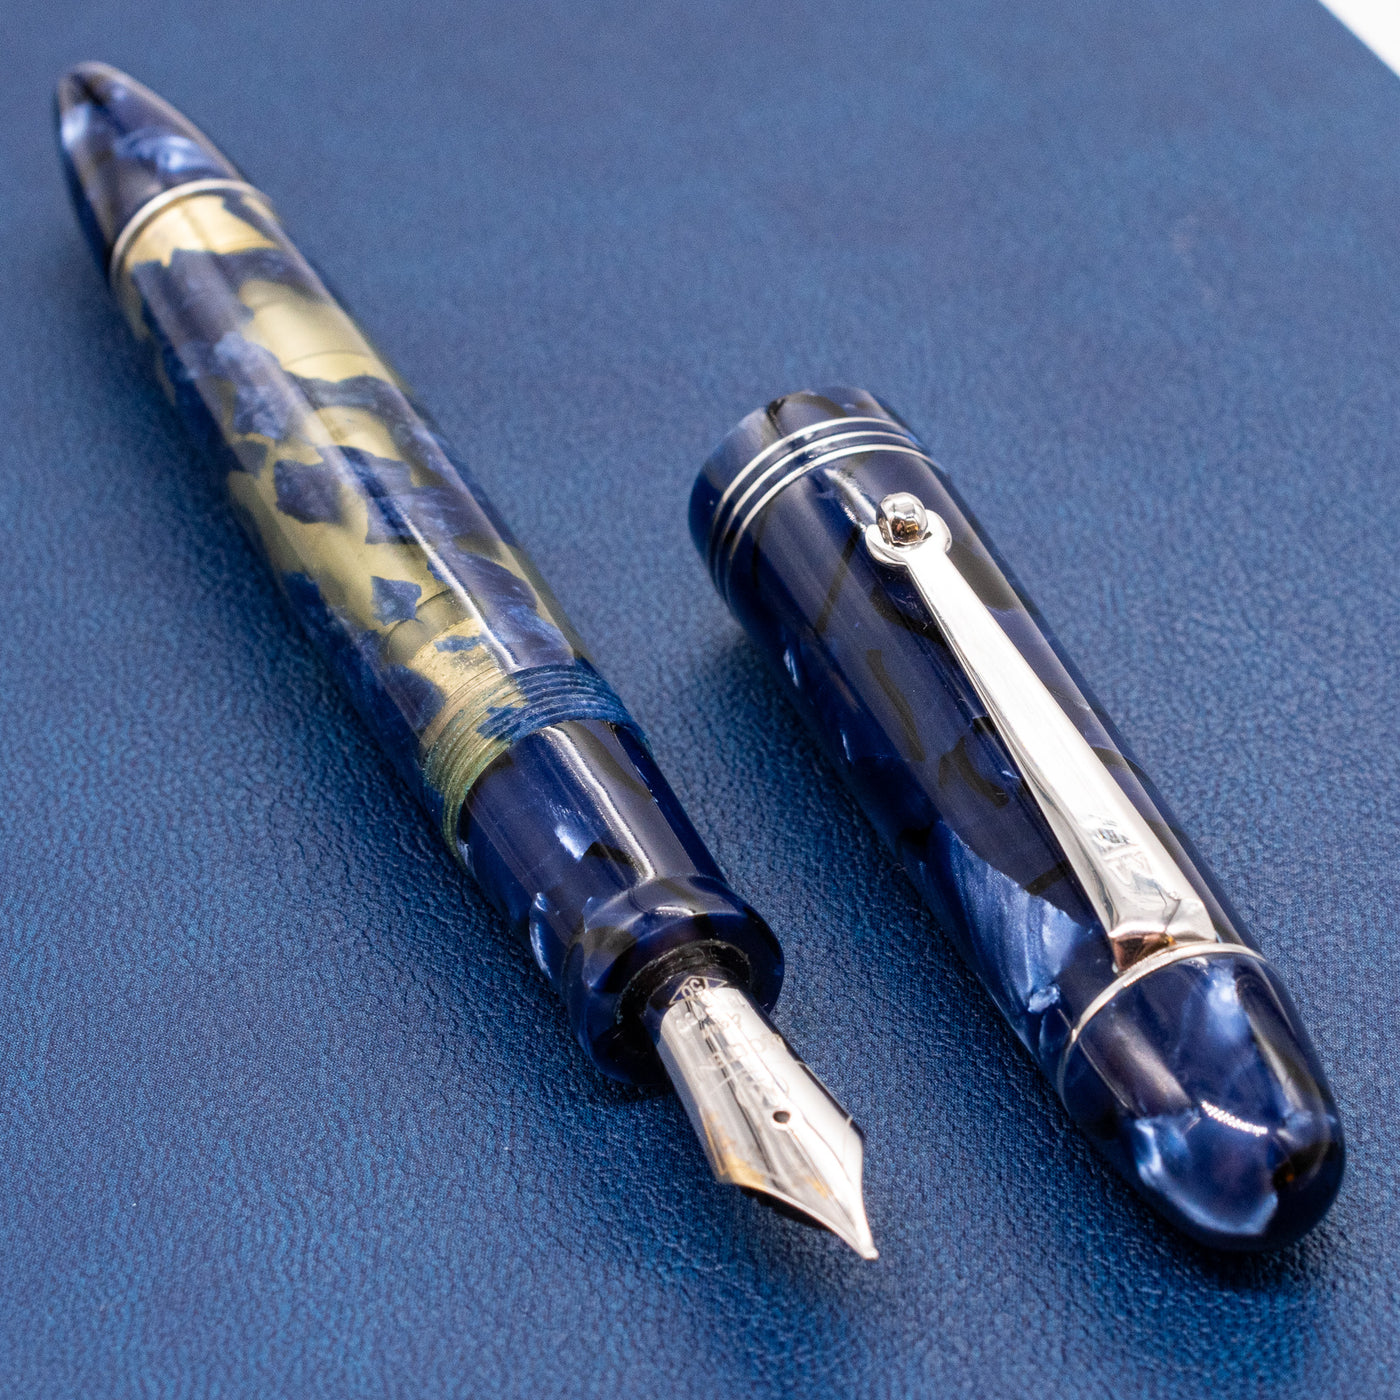 Molteni Modelo 55 Fountain Pen - Royal Blue Lucens Celluloid blue